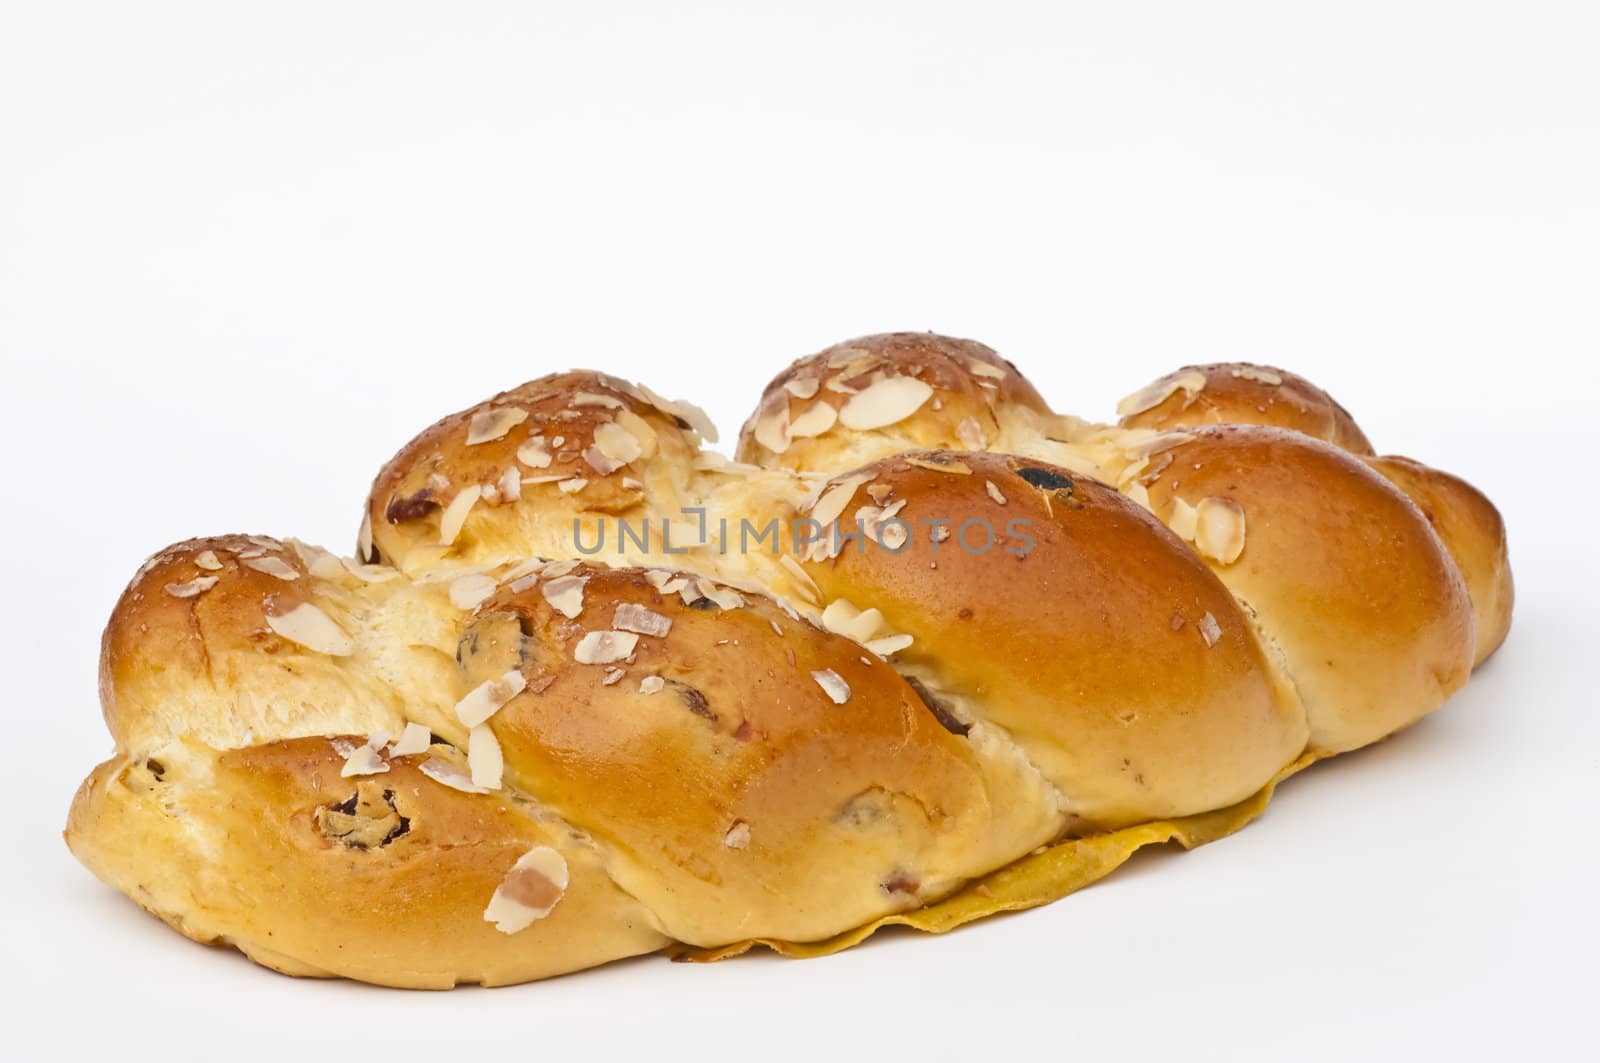 braided yeast bun by Jochen